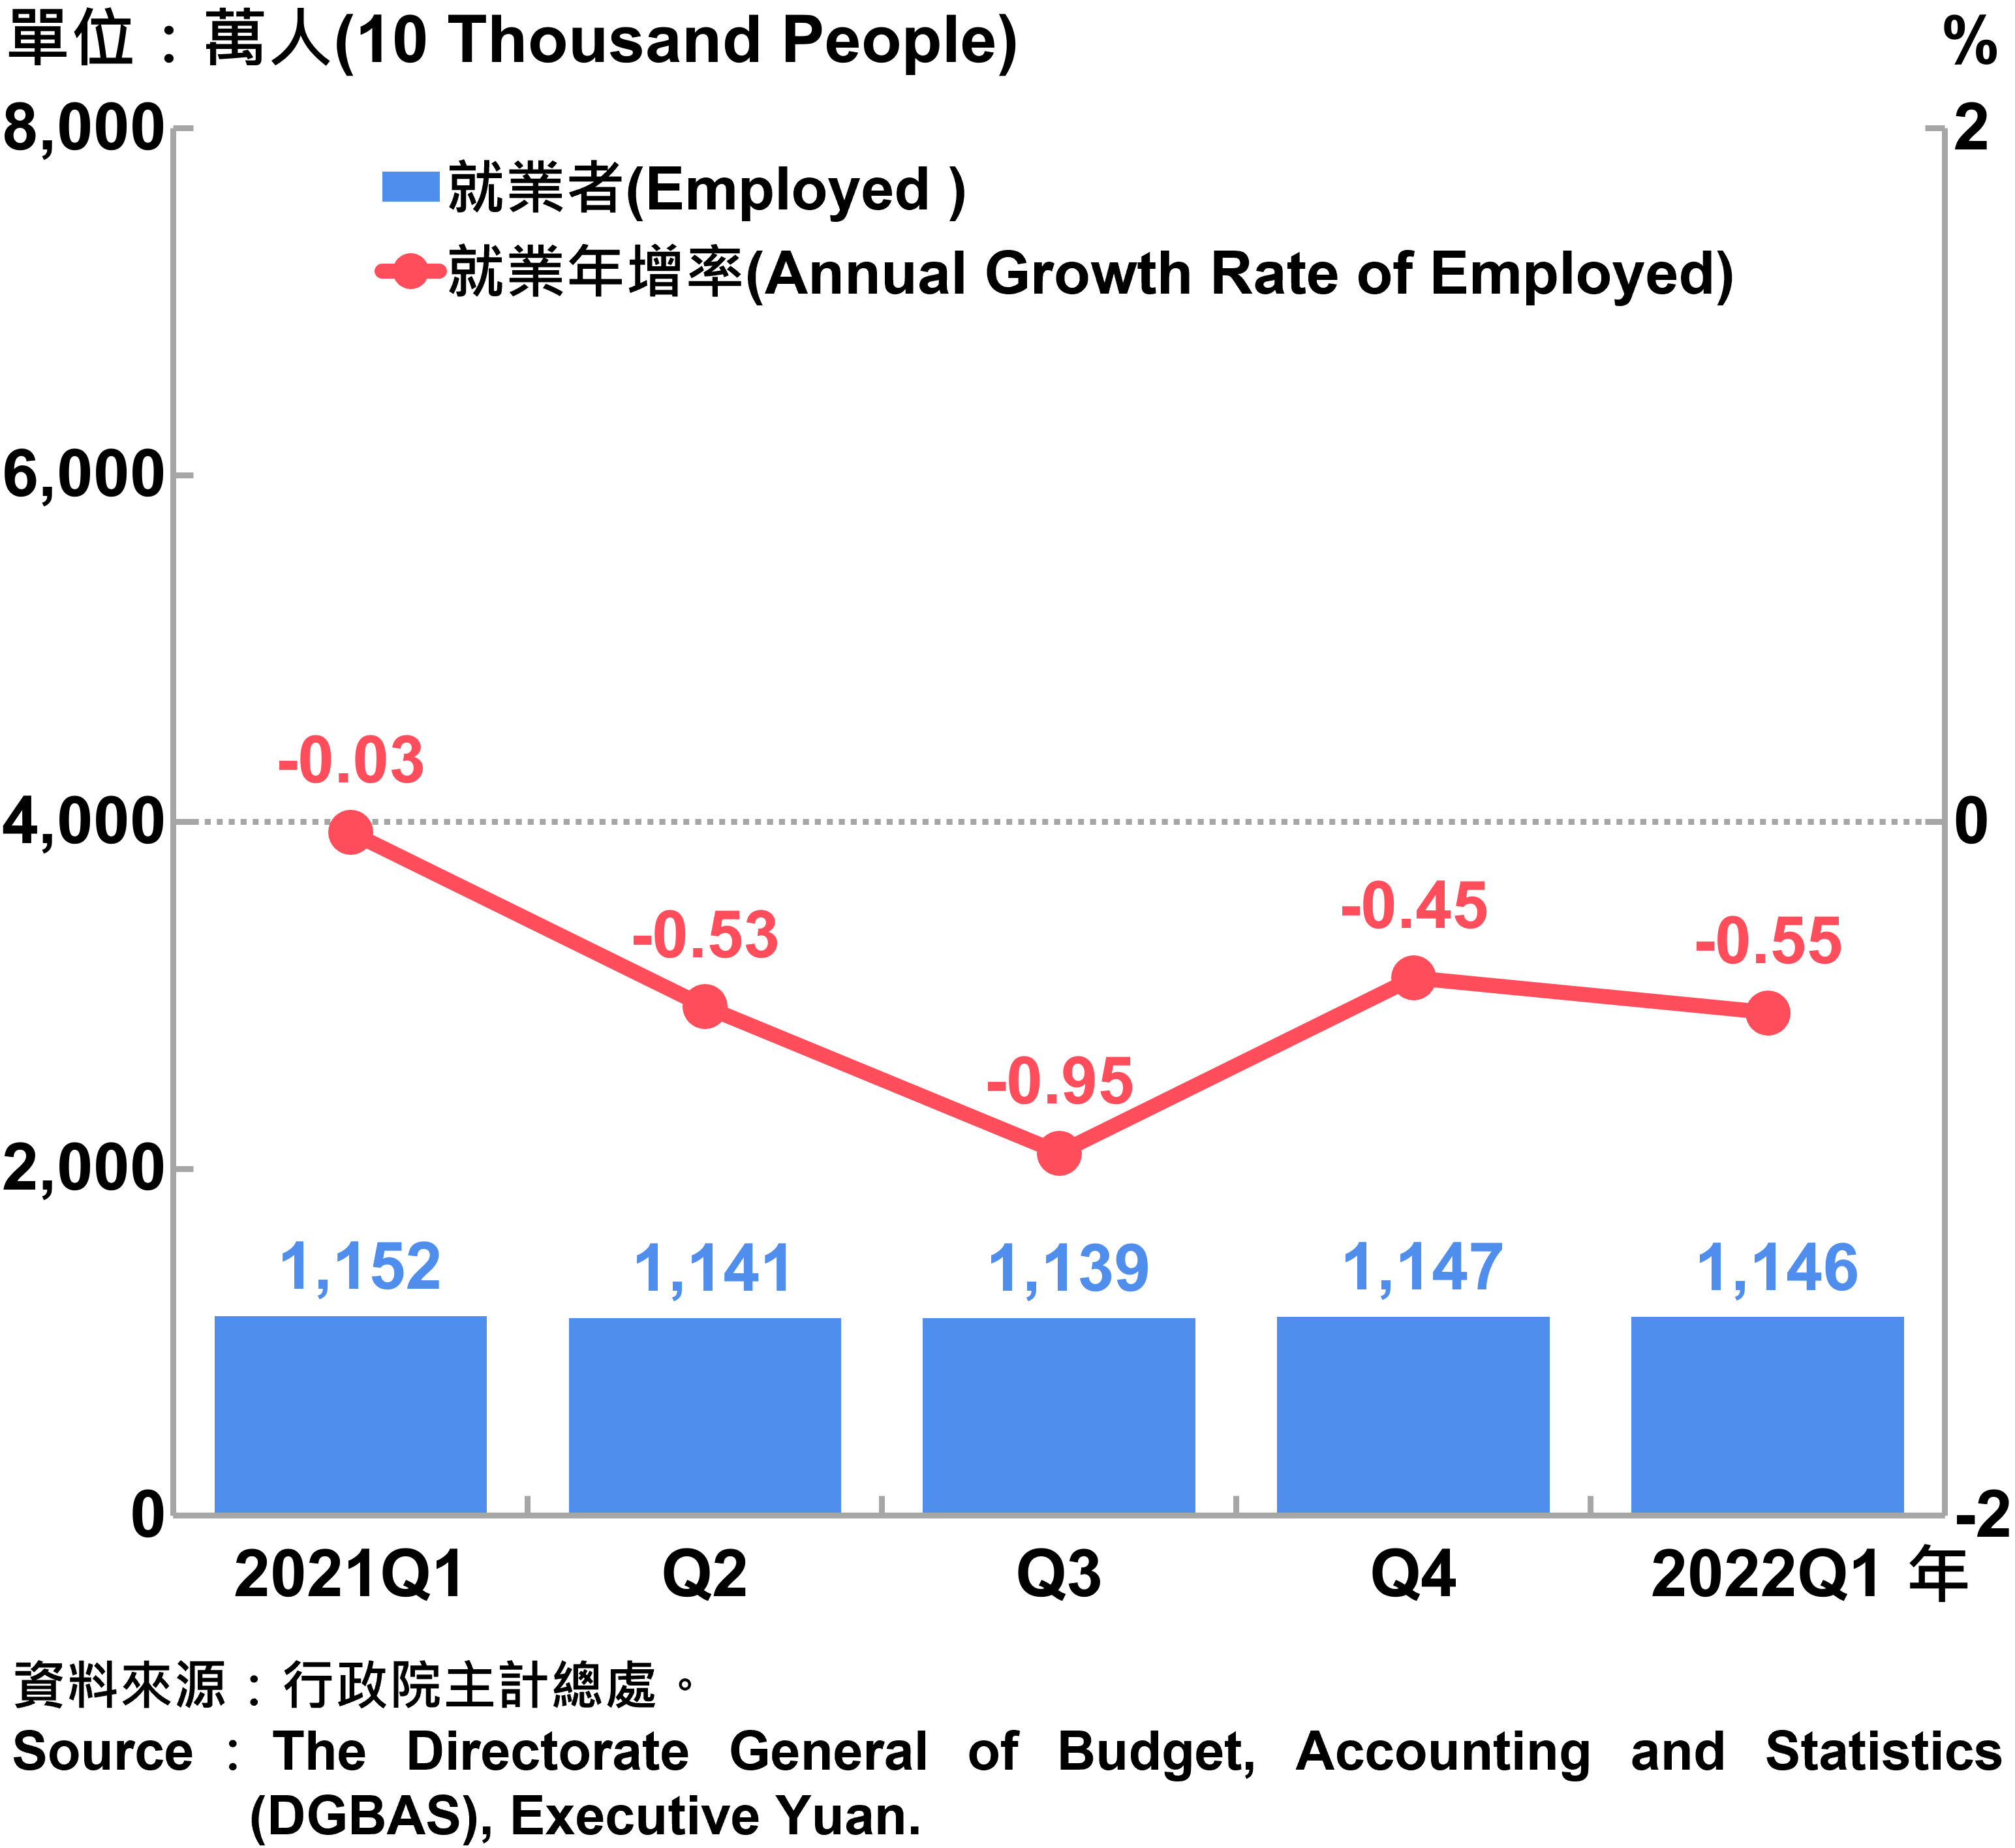 就業人數及就業年增率 Employed and Annual Growth Rate of Employed